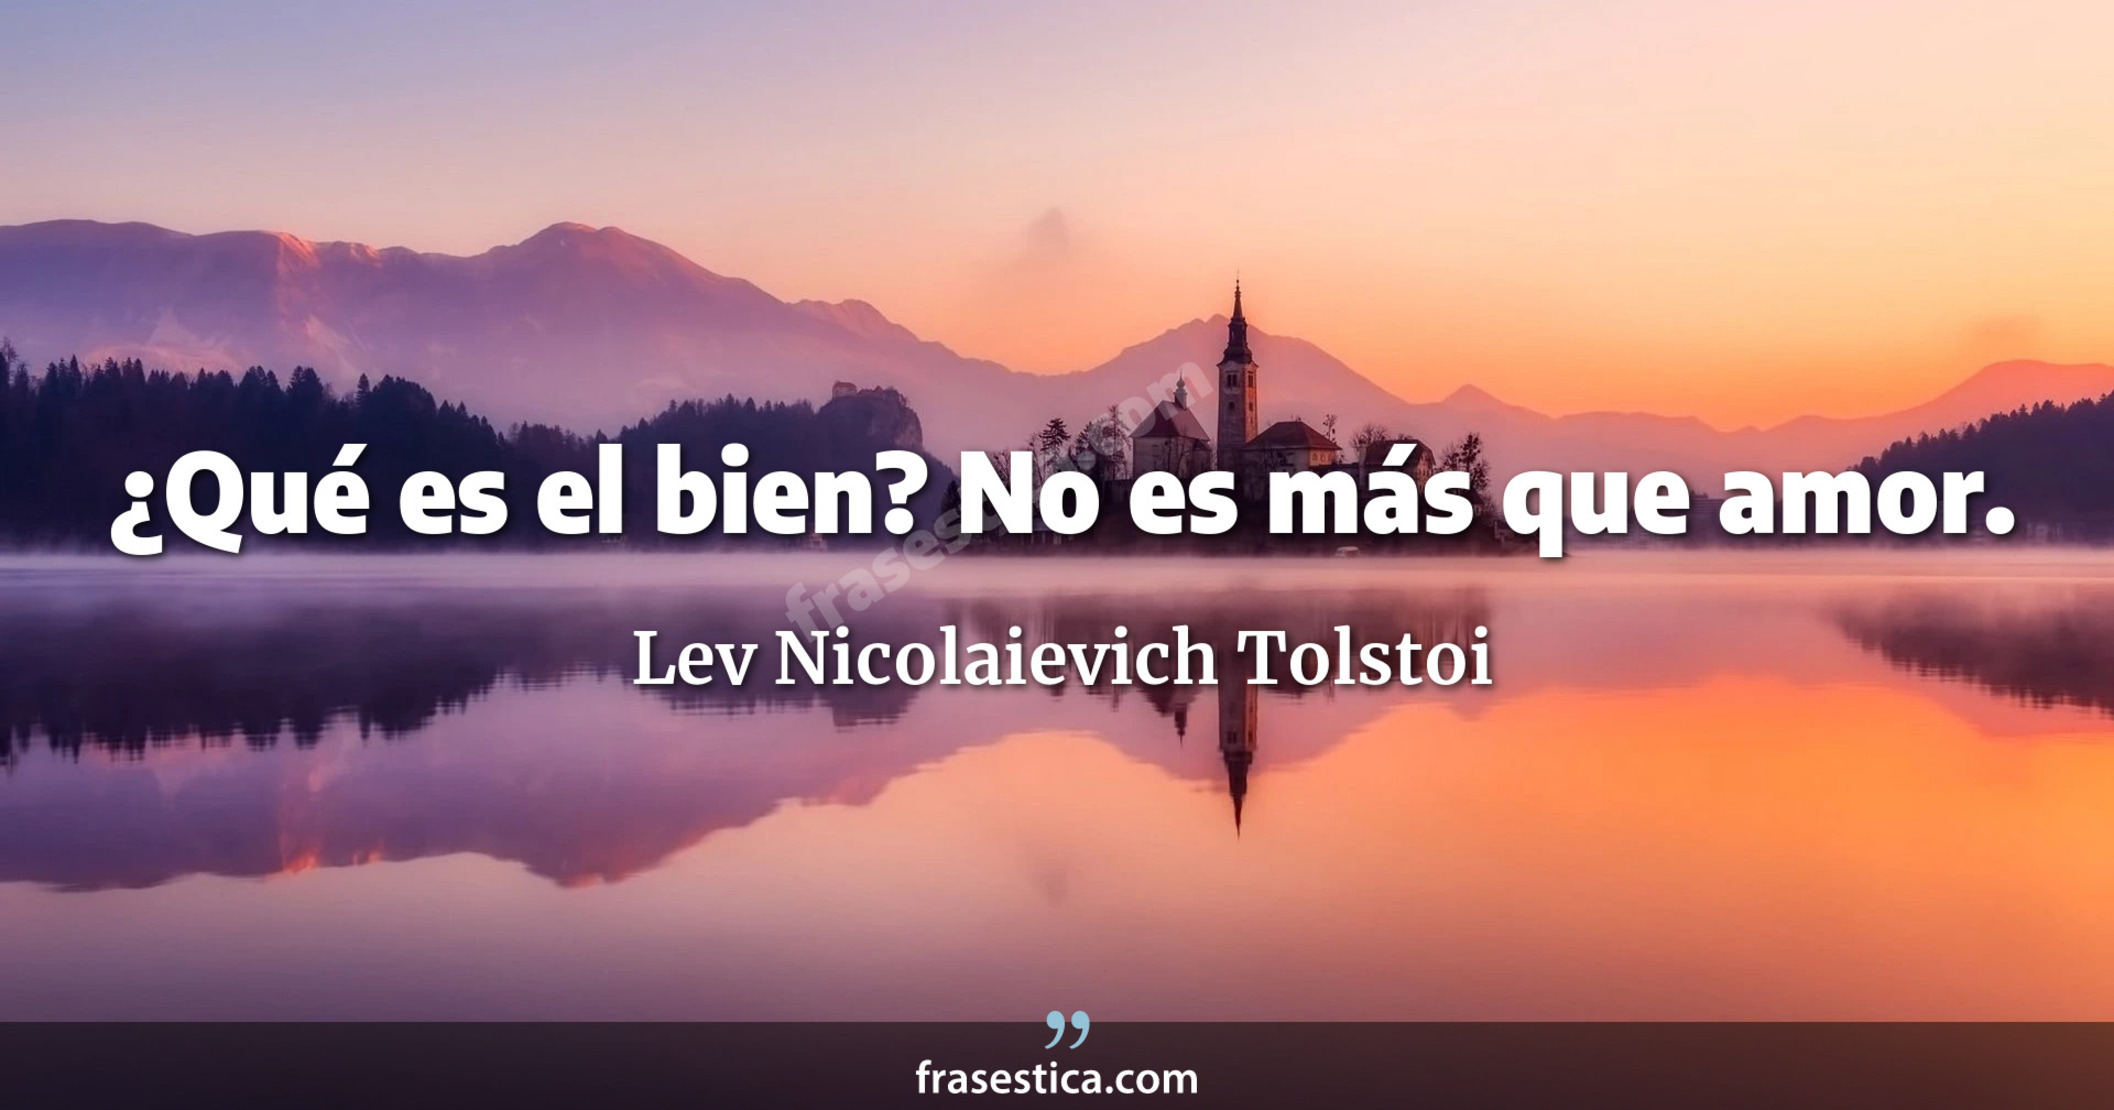 ¿Qué es el bien? No es más que amor. - Lev Nicolaievich Tolstoi